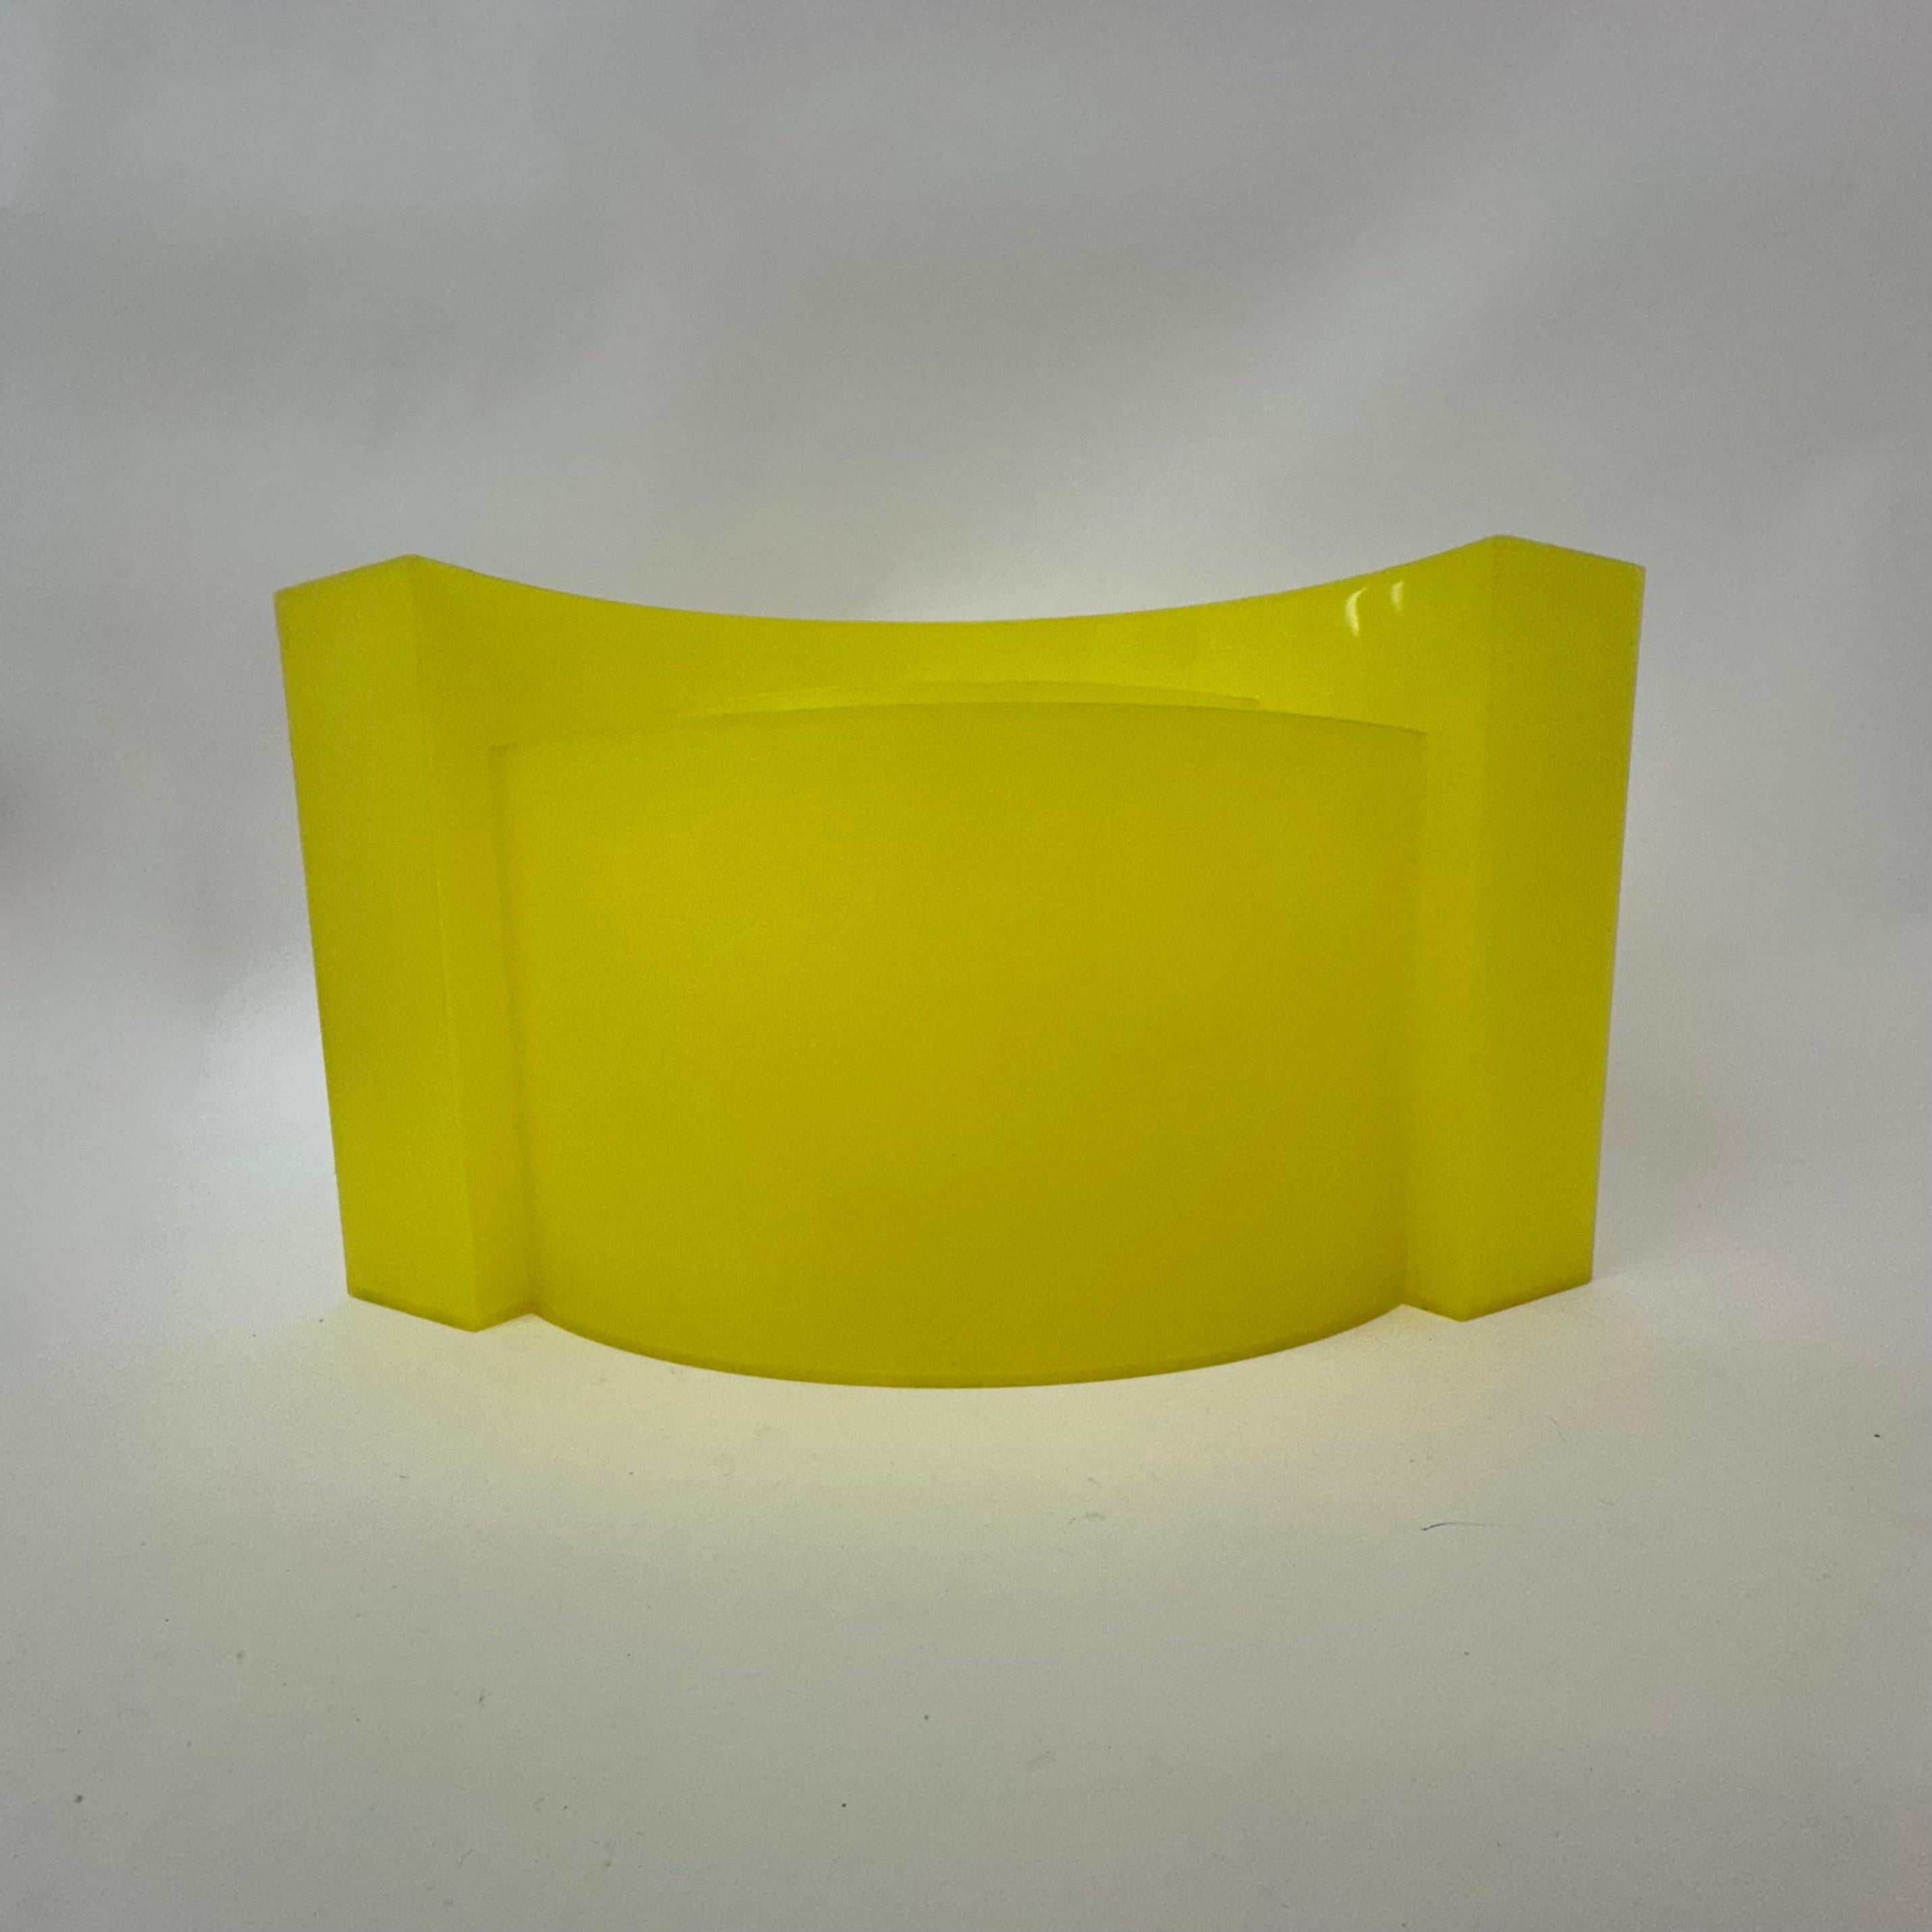 Dimensions: 50cm W, 23cm D, 27cm H
Material: Plastic
Color: Yellow
Designer : Maier-Aichen
Manufacturer: Authentics
Model: Wave